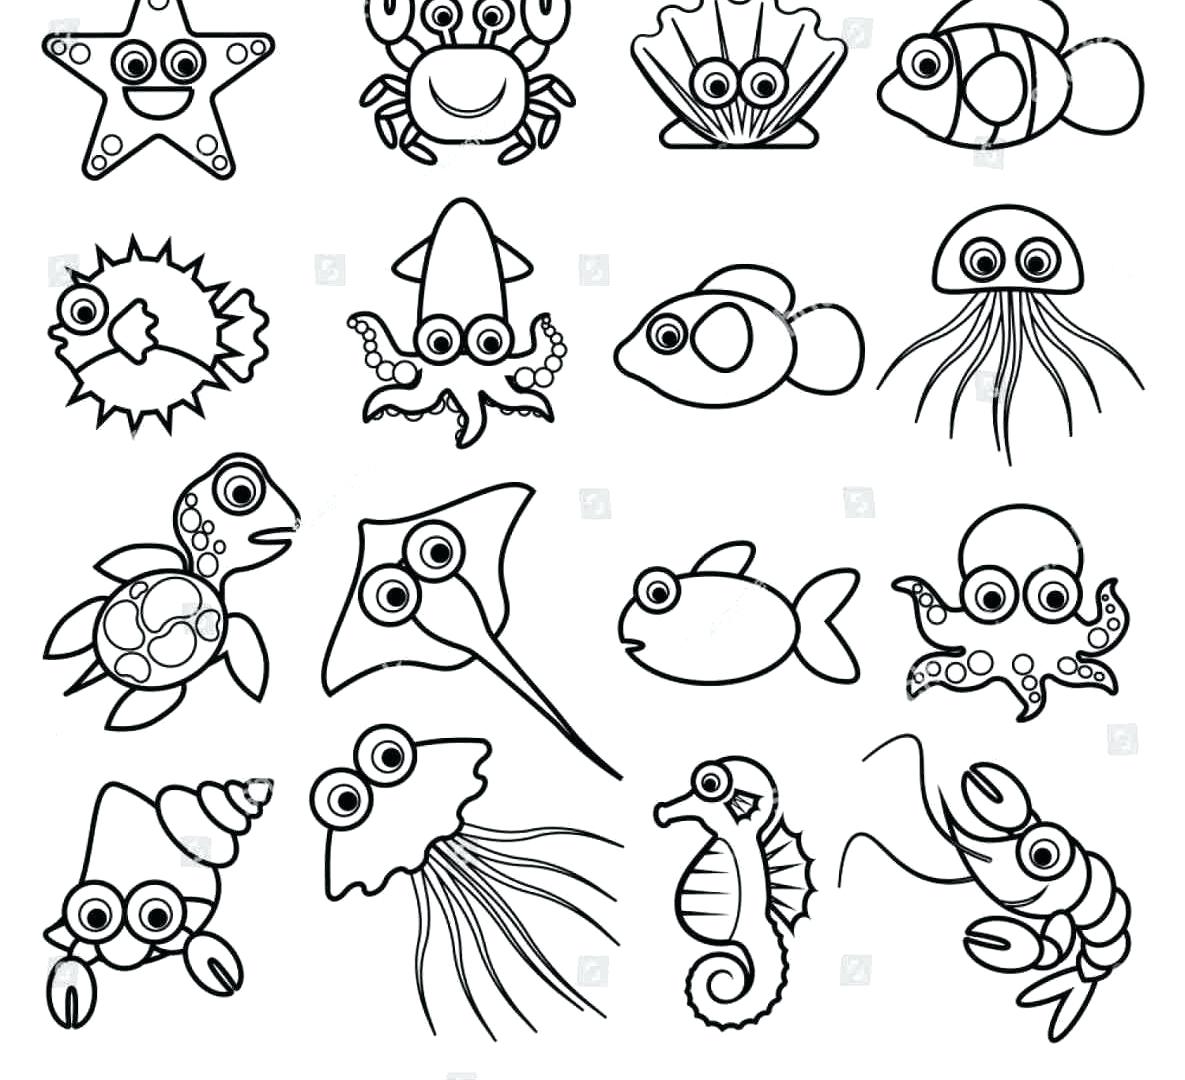 Aquarium Drawing For Kids at GetDrawings | Free download